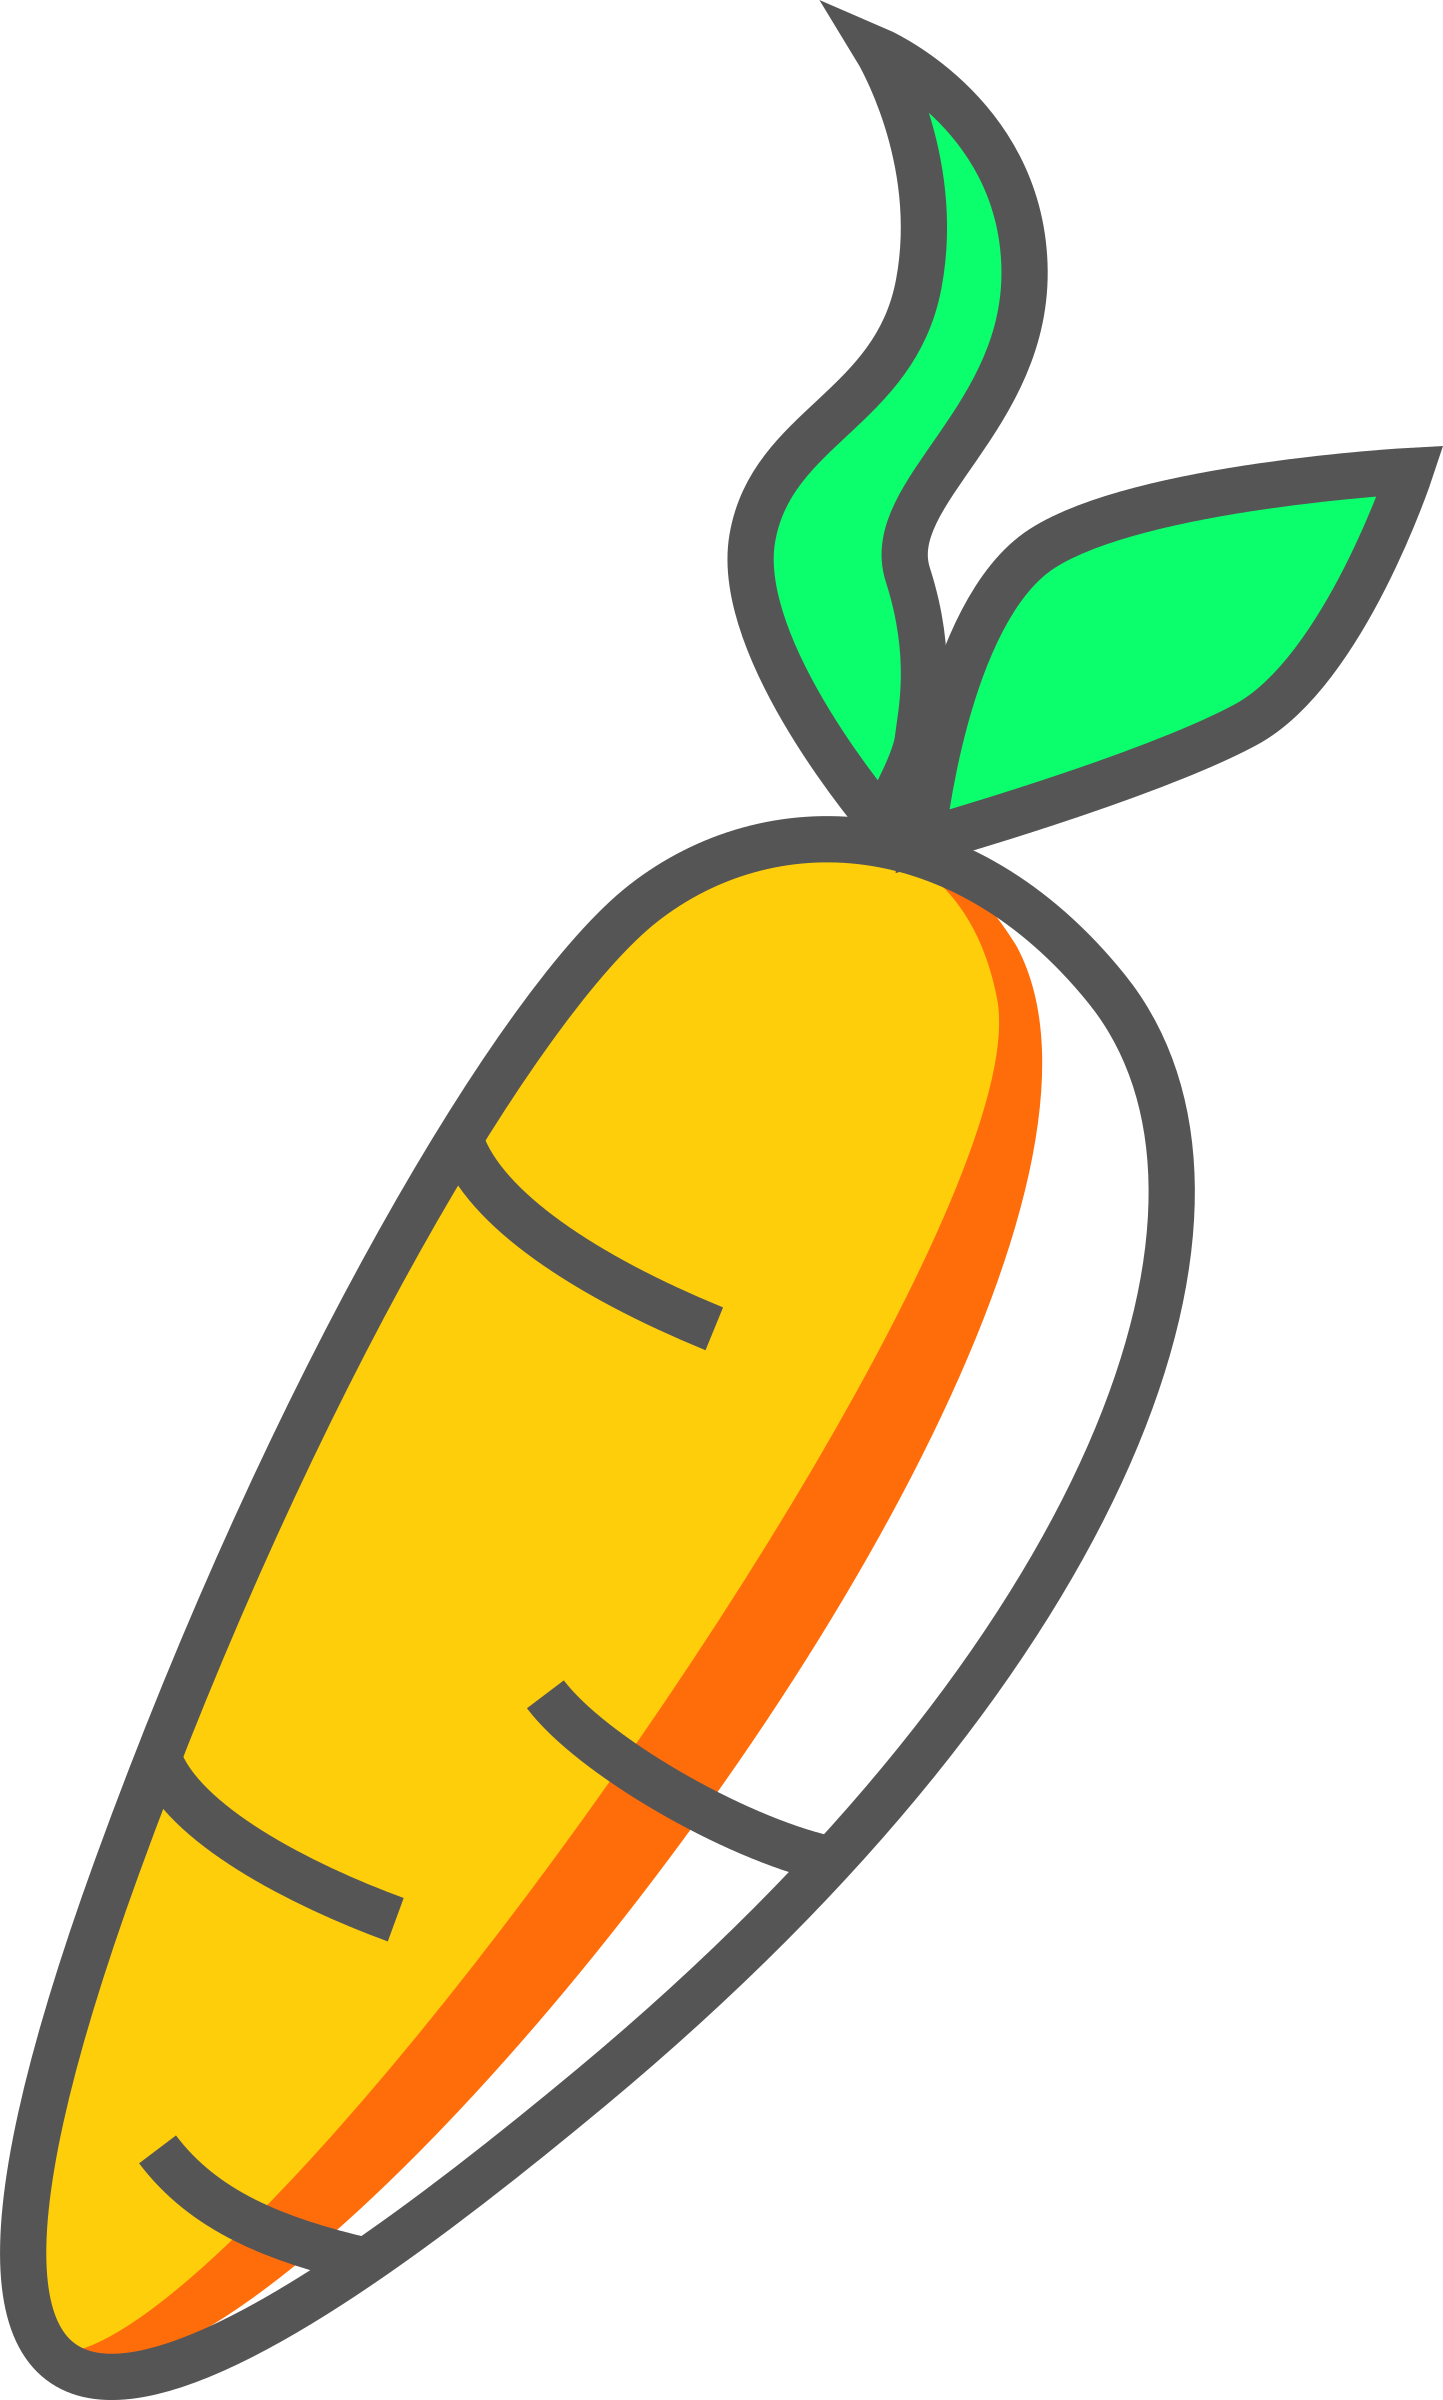 Carrot Cake Vegetable Clip Art - Carrot Cake Vegetable Clip Art (1443x2400)